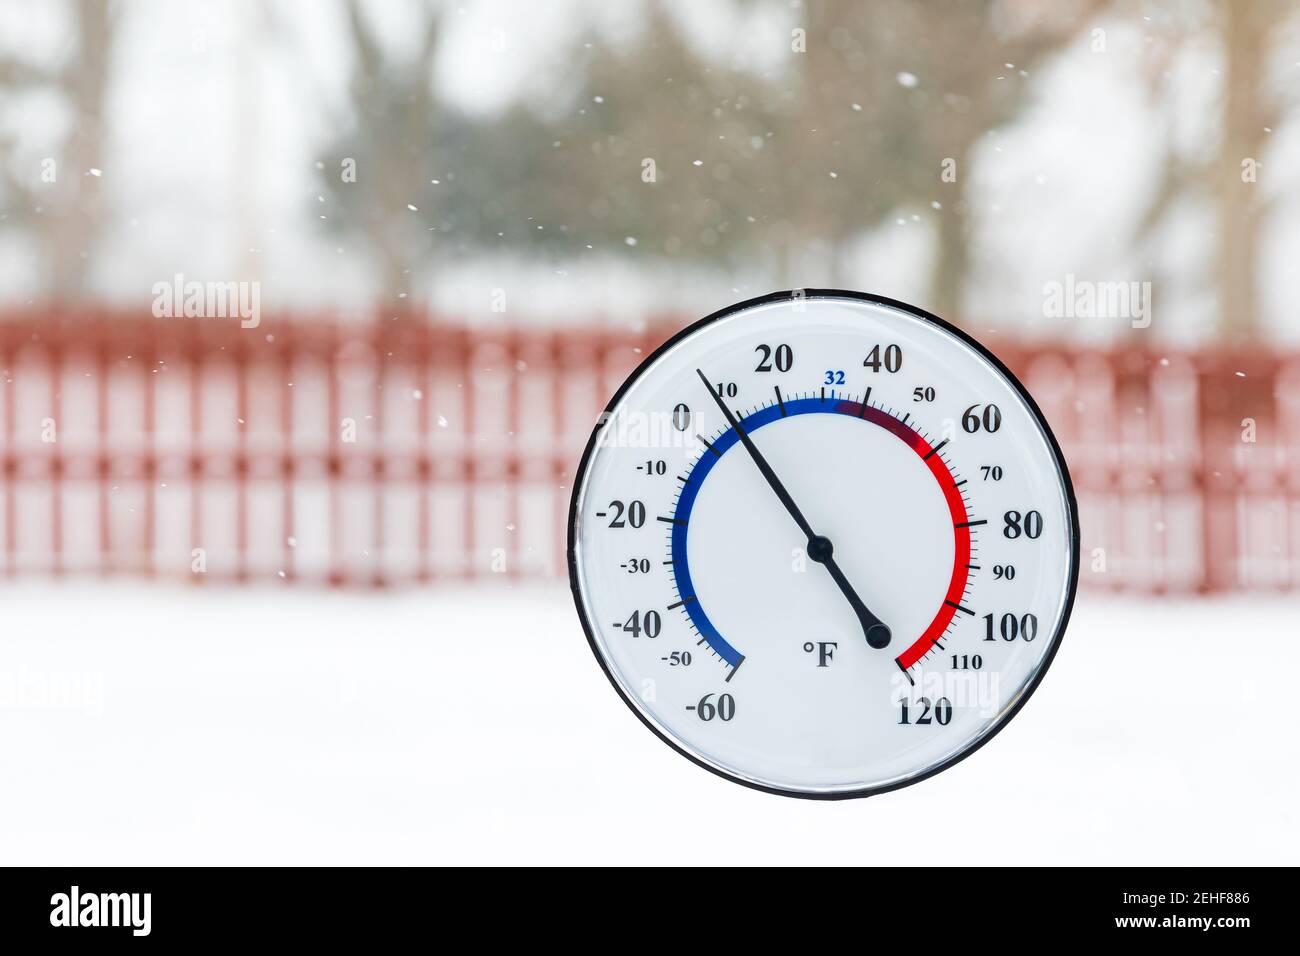 Termómetro que muestra la temperatura fría durante la tormenta de nieve de invierno. Concepto de clima frío, temperatura fría y seguridad invernal Foto de stock